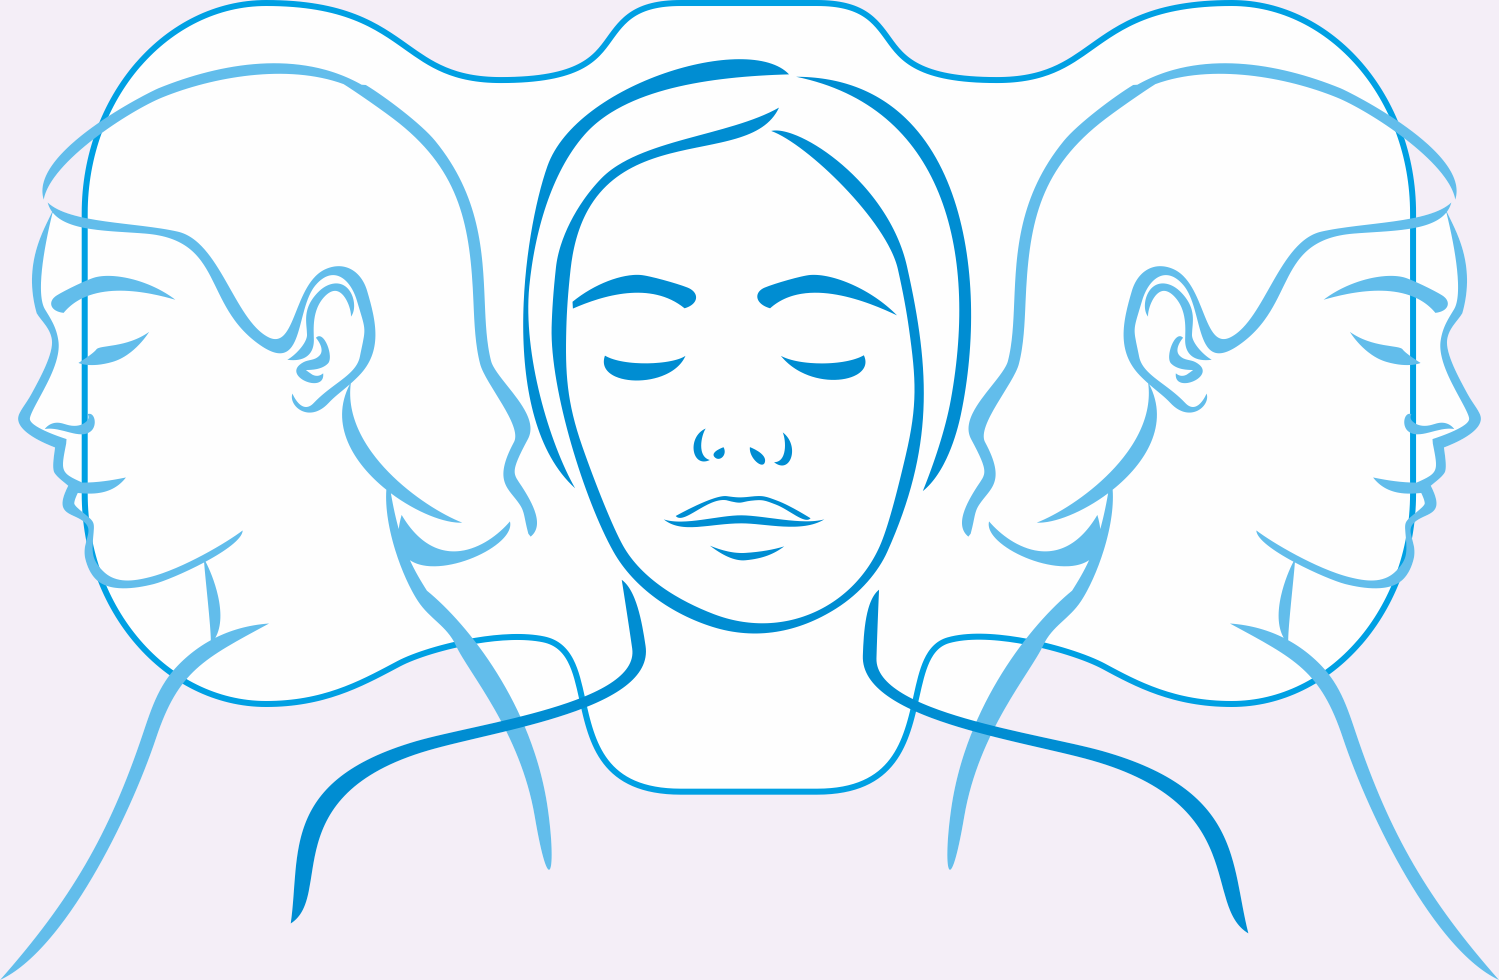 Orthopädisches Kissen zum Schlafen in jeder Position, Schlafkissen, Nackenschmerzen, Migräne